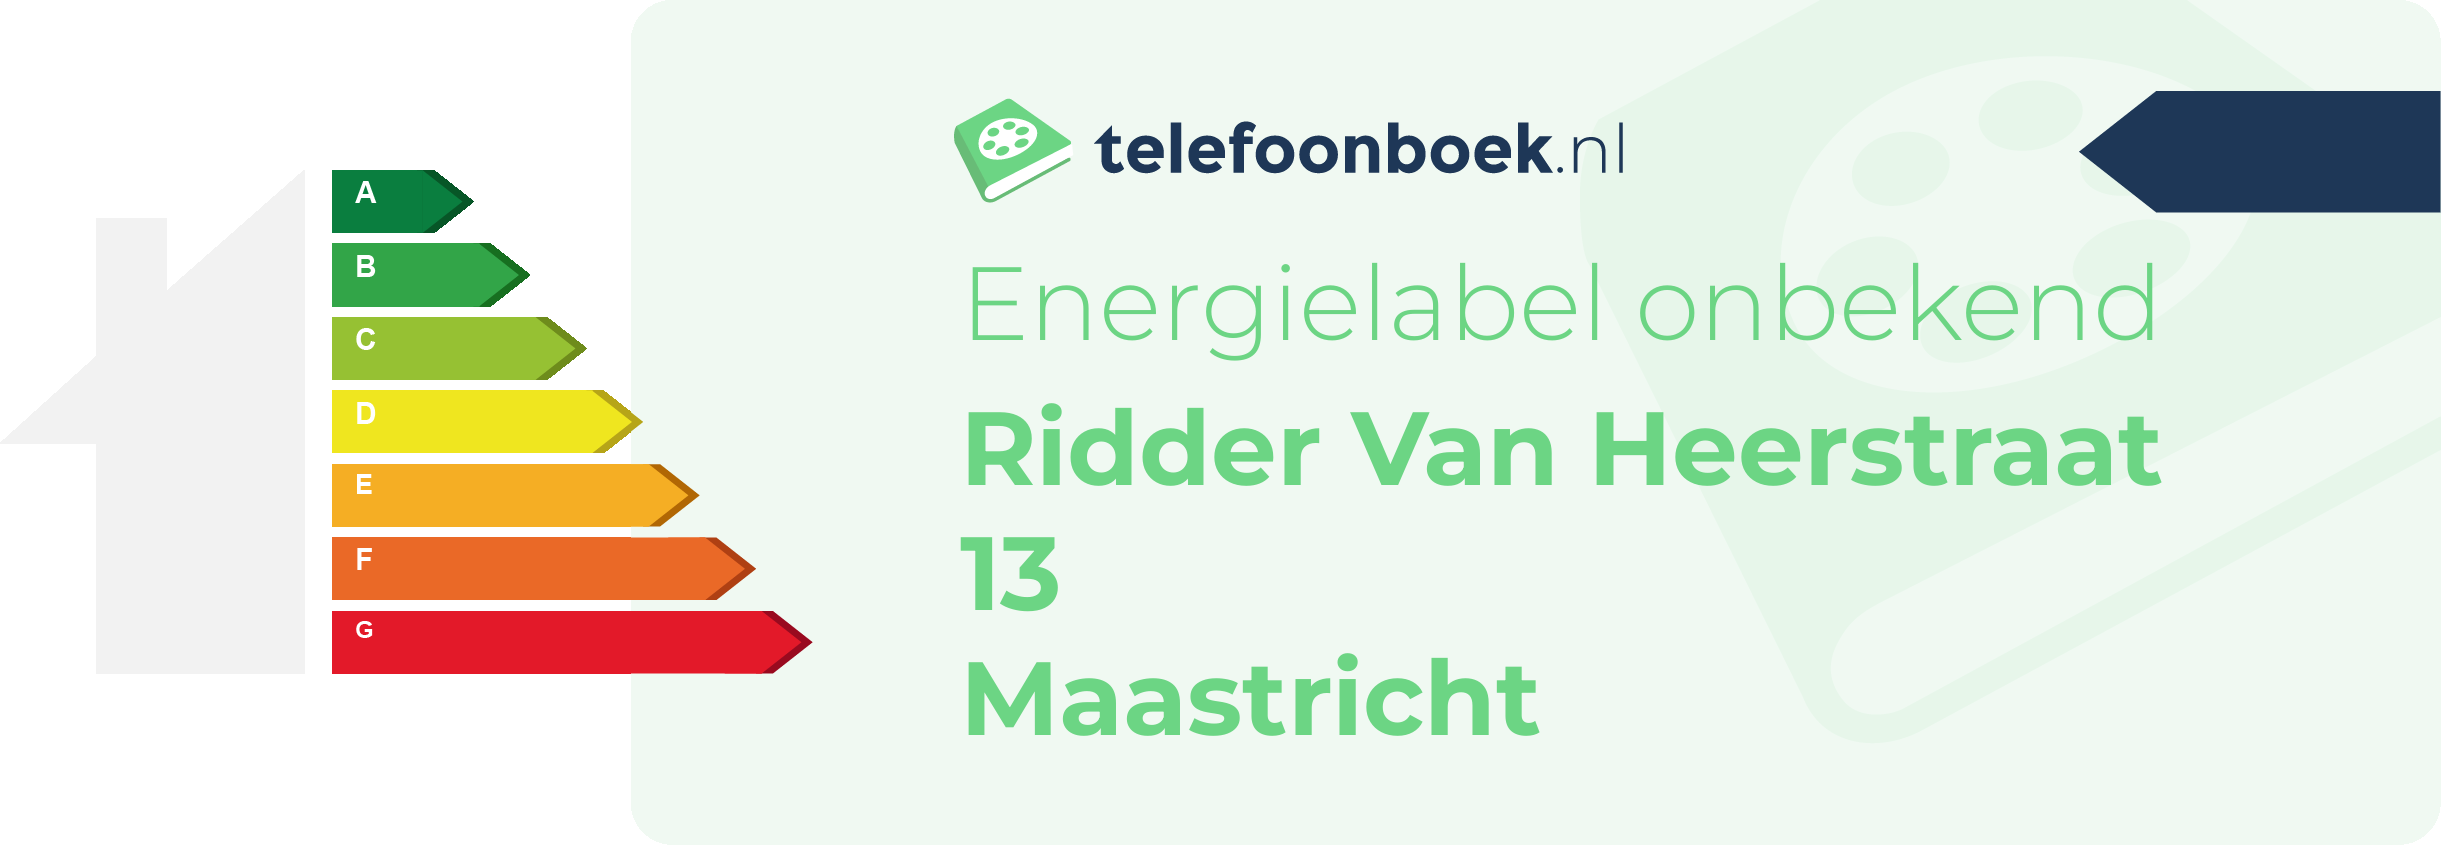 Energielabel Ridder Van Heerstraat 13 Maastricht